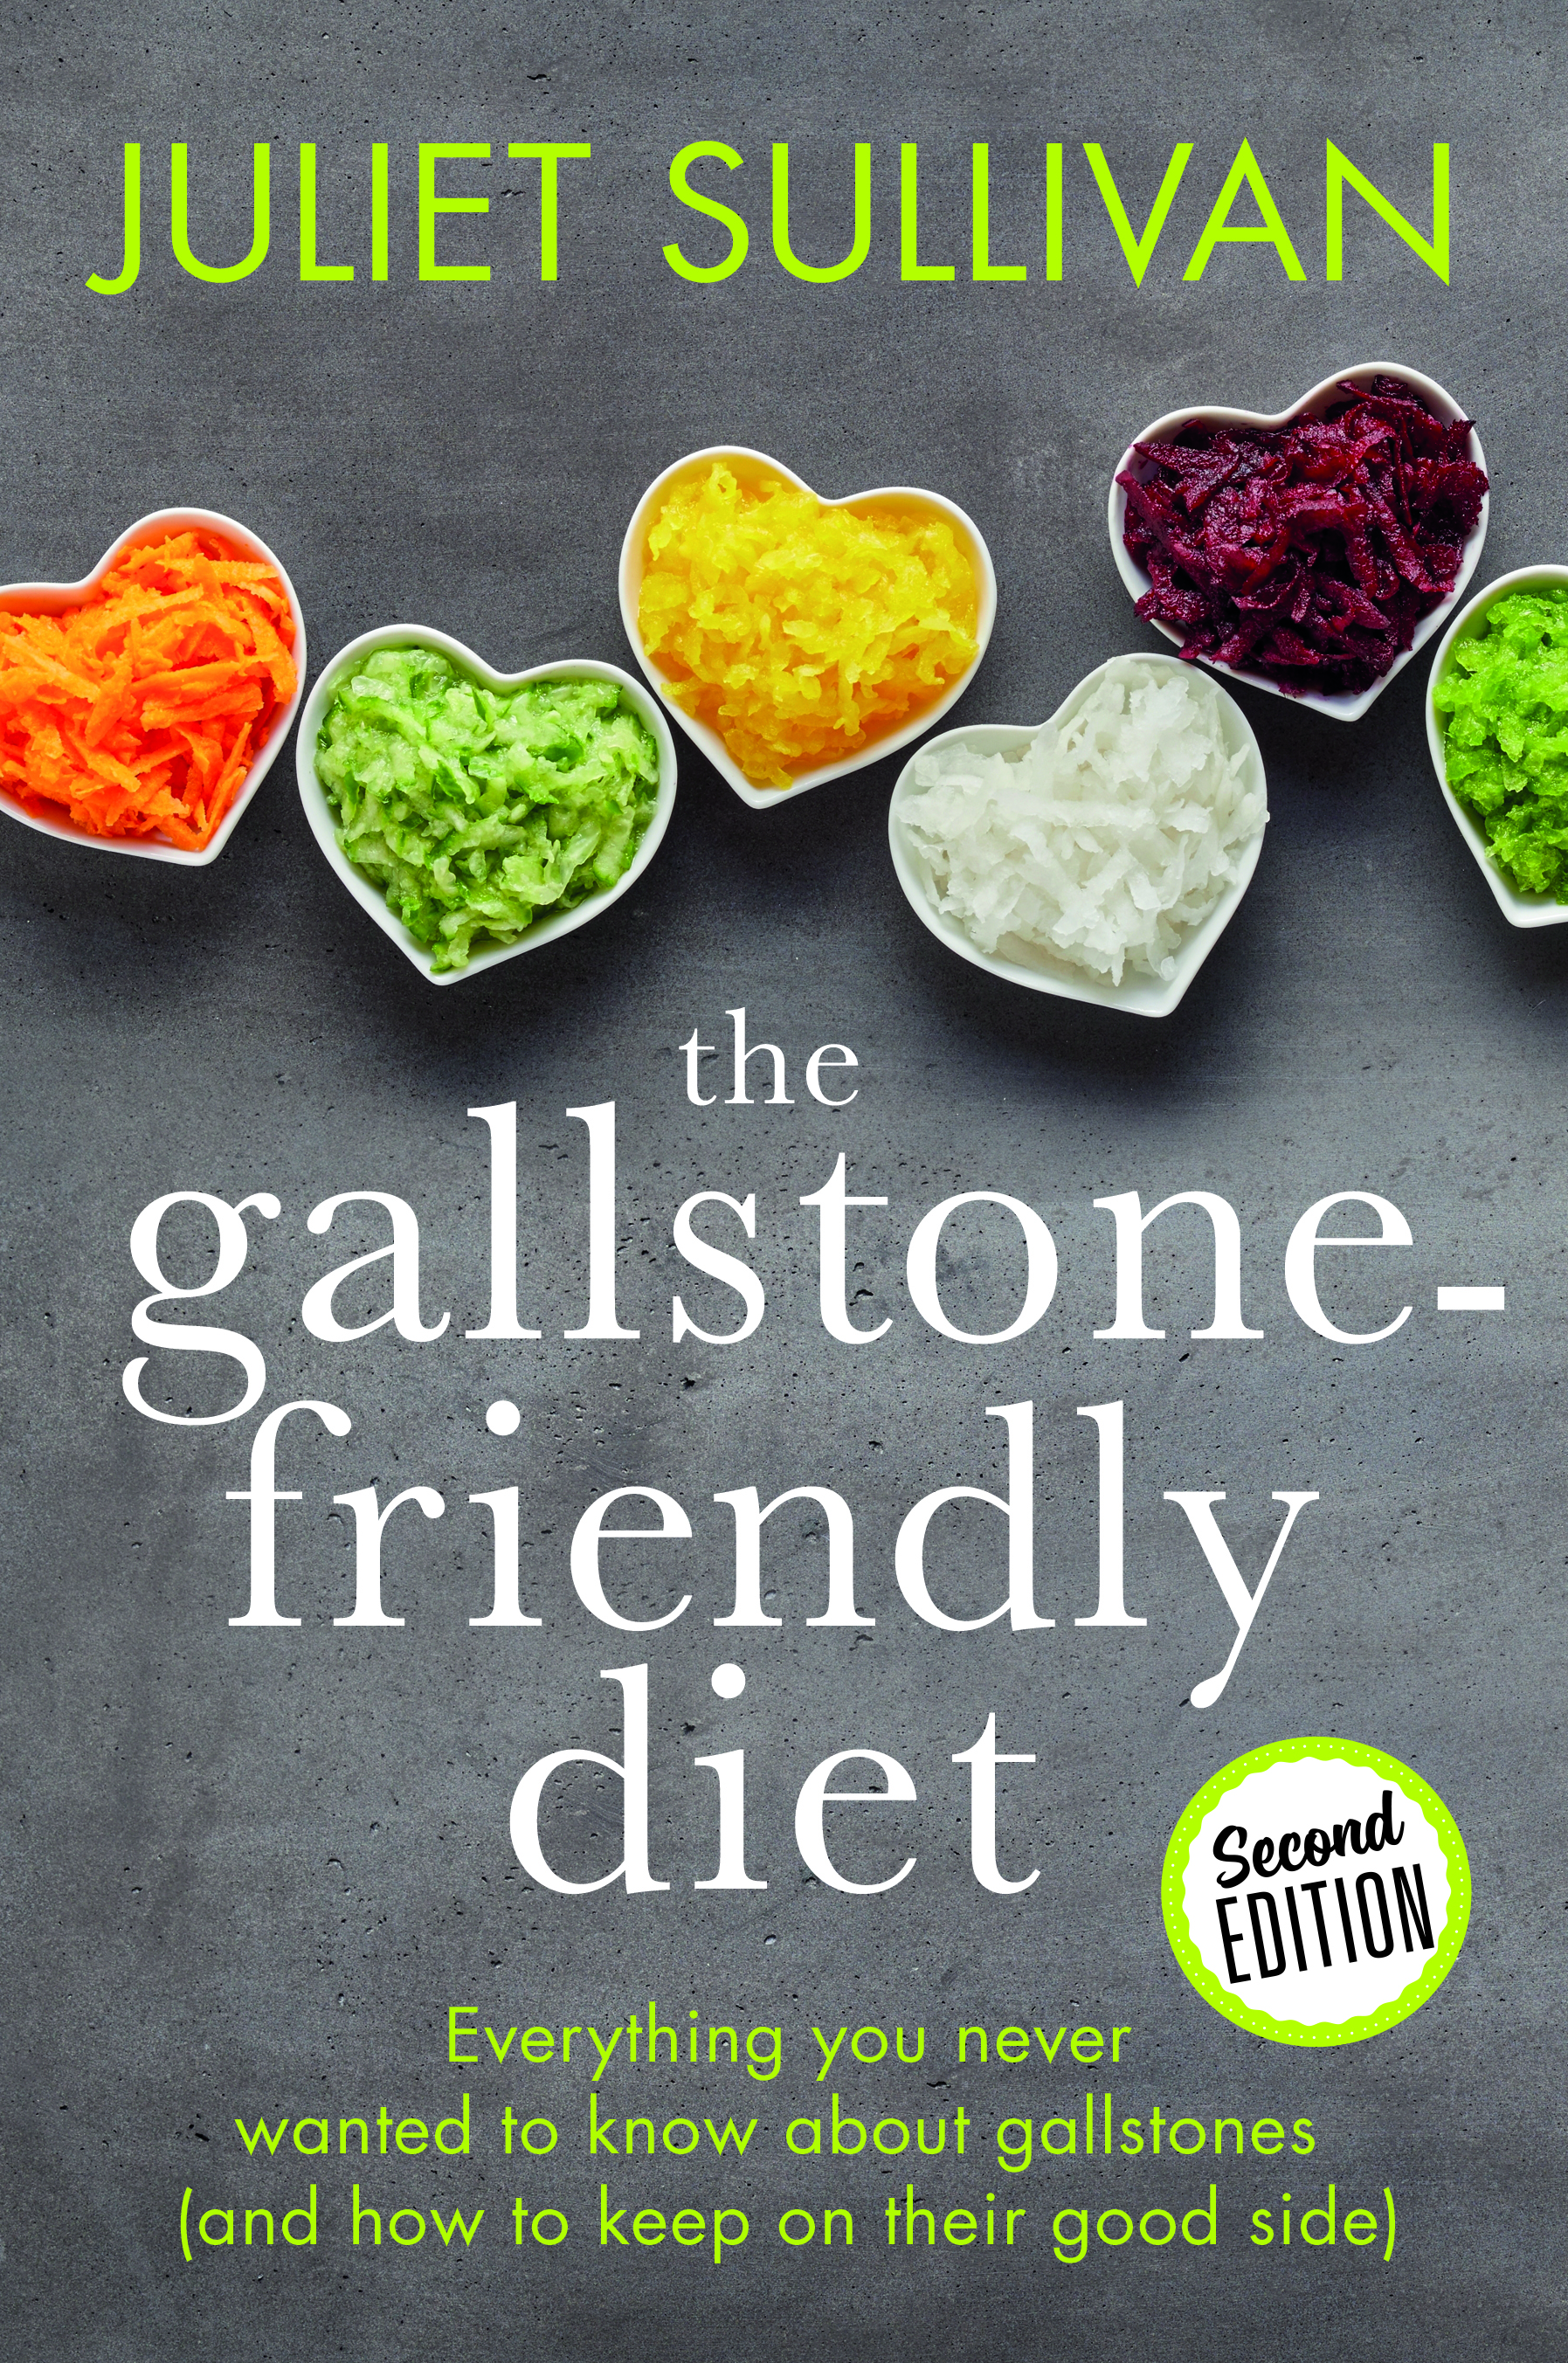 The Gallstone-friendly Diet